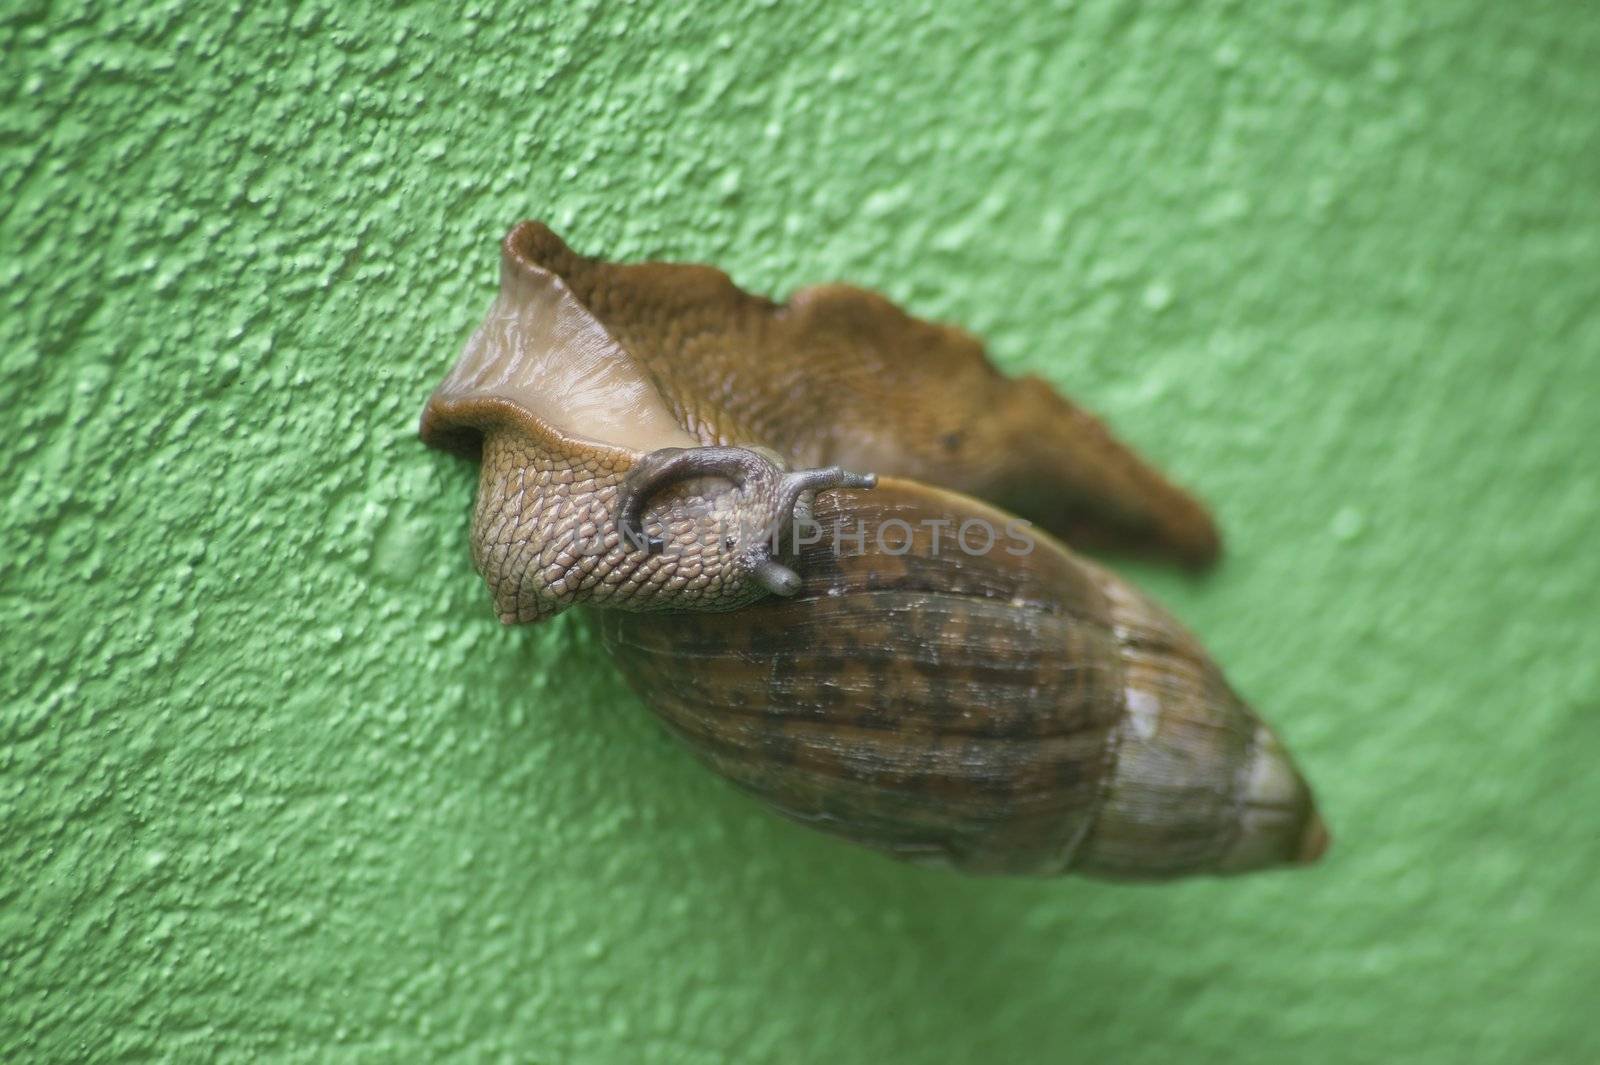 Arborel Snail by Creatista